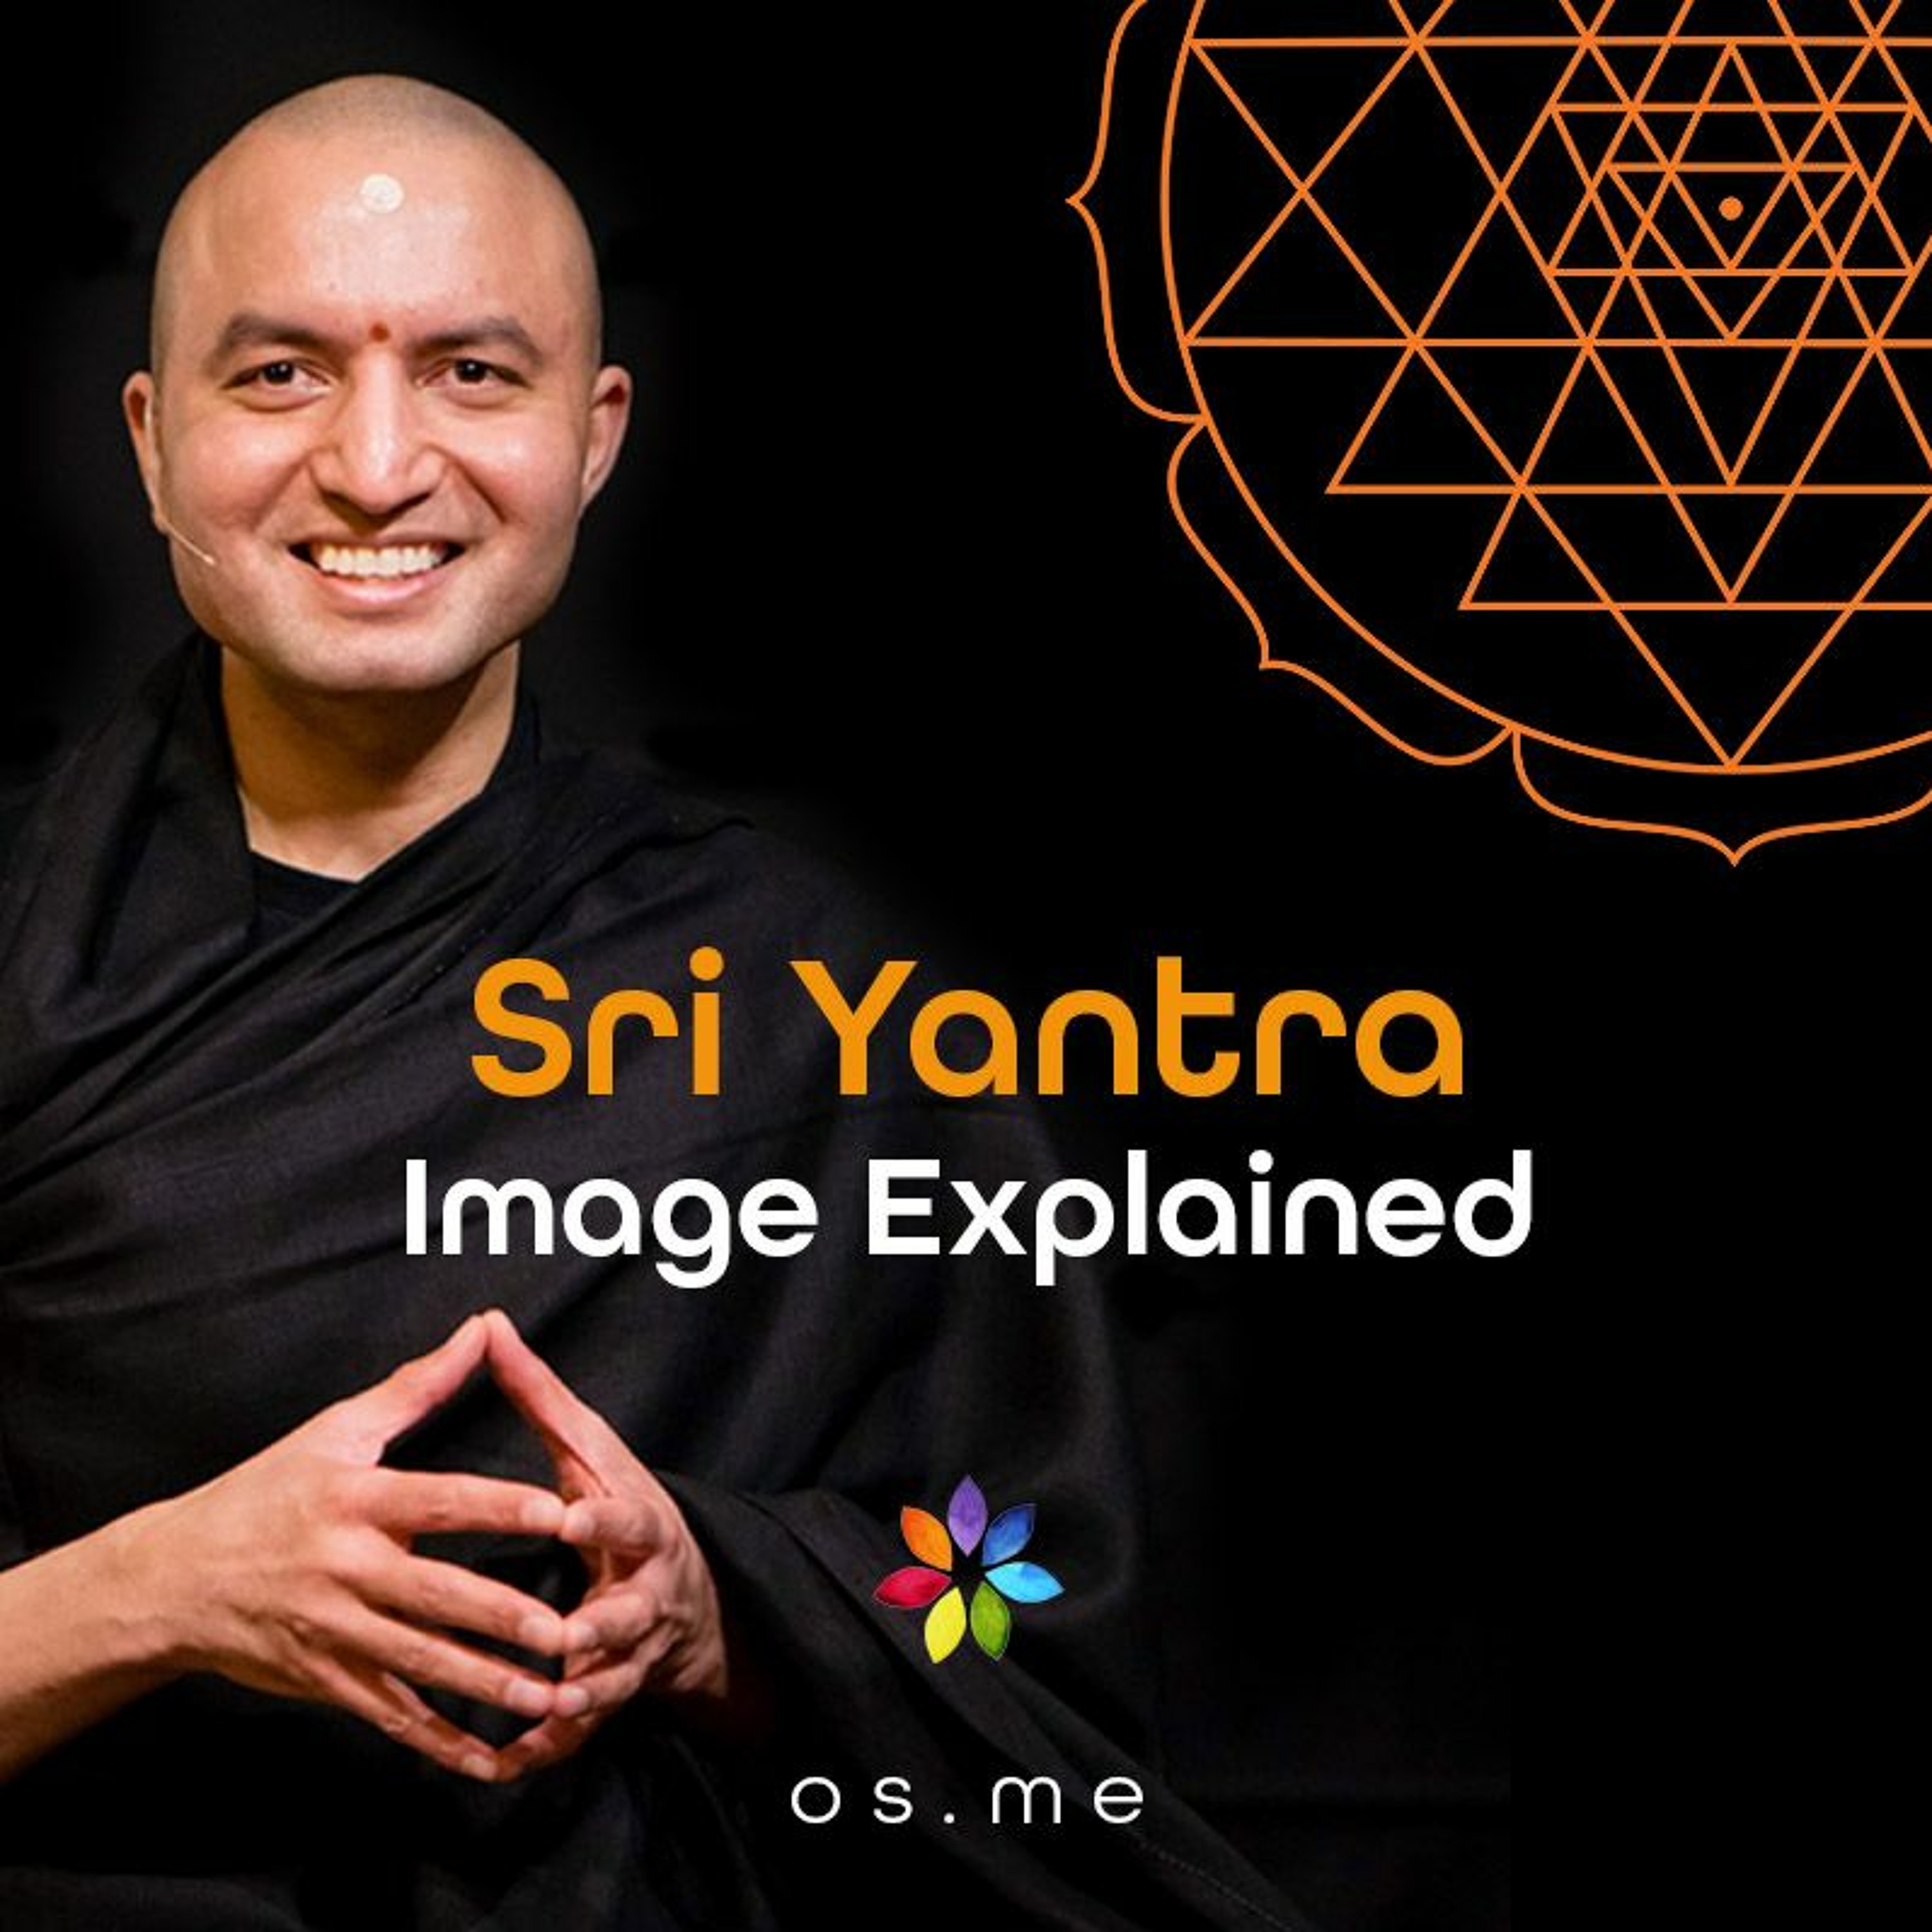 Sri Yantra Image Explained - [Hindi]